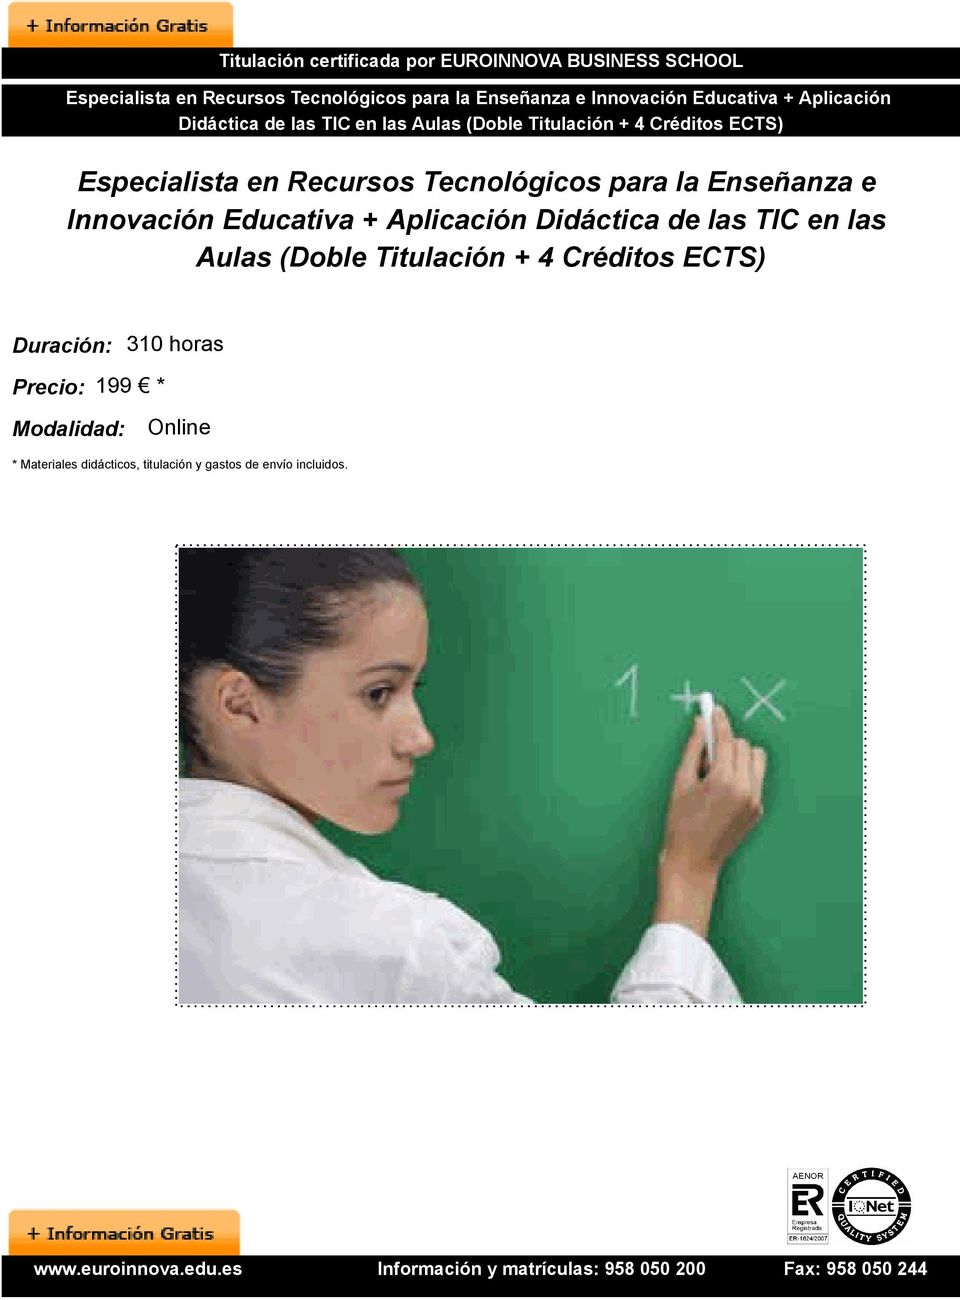 Innovación Educativa + Aplicación Didáctica de las TIC en las Aulas (Doble Titulación + 4 Créditos ECTS)